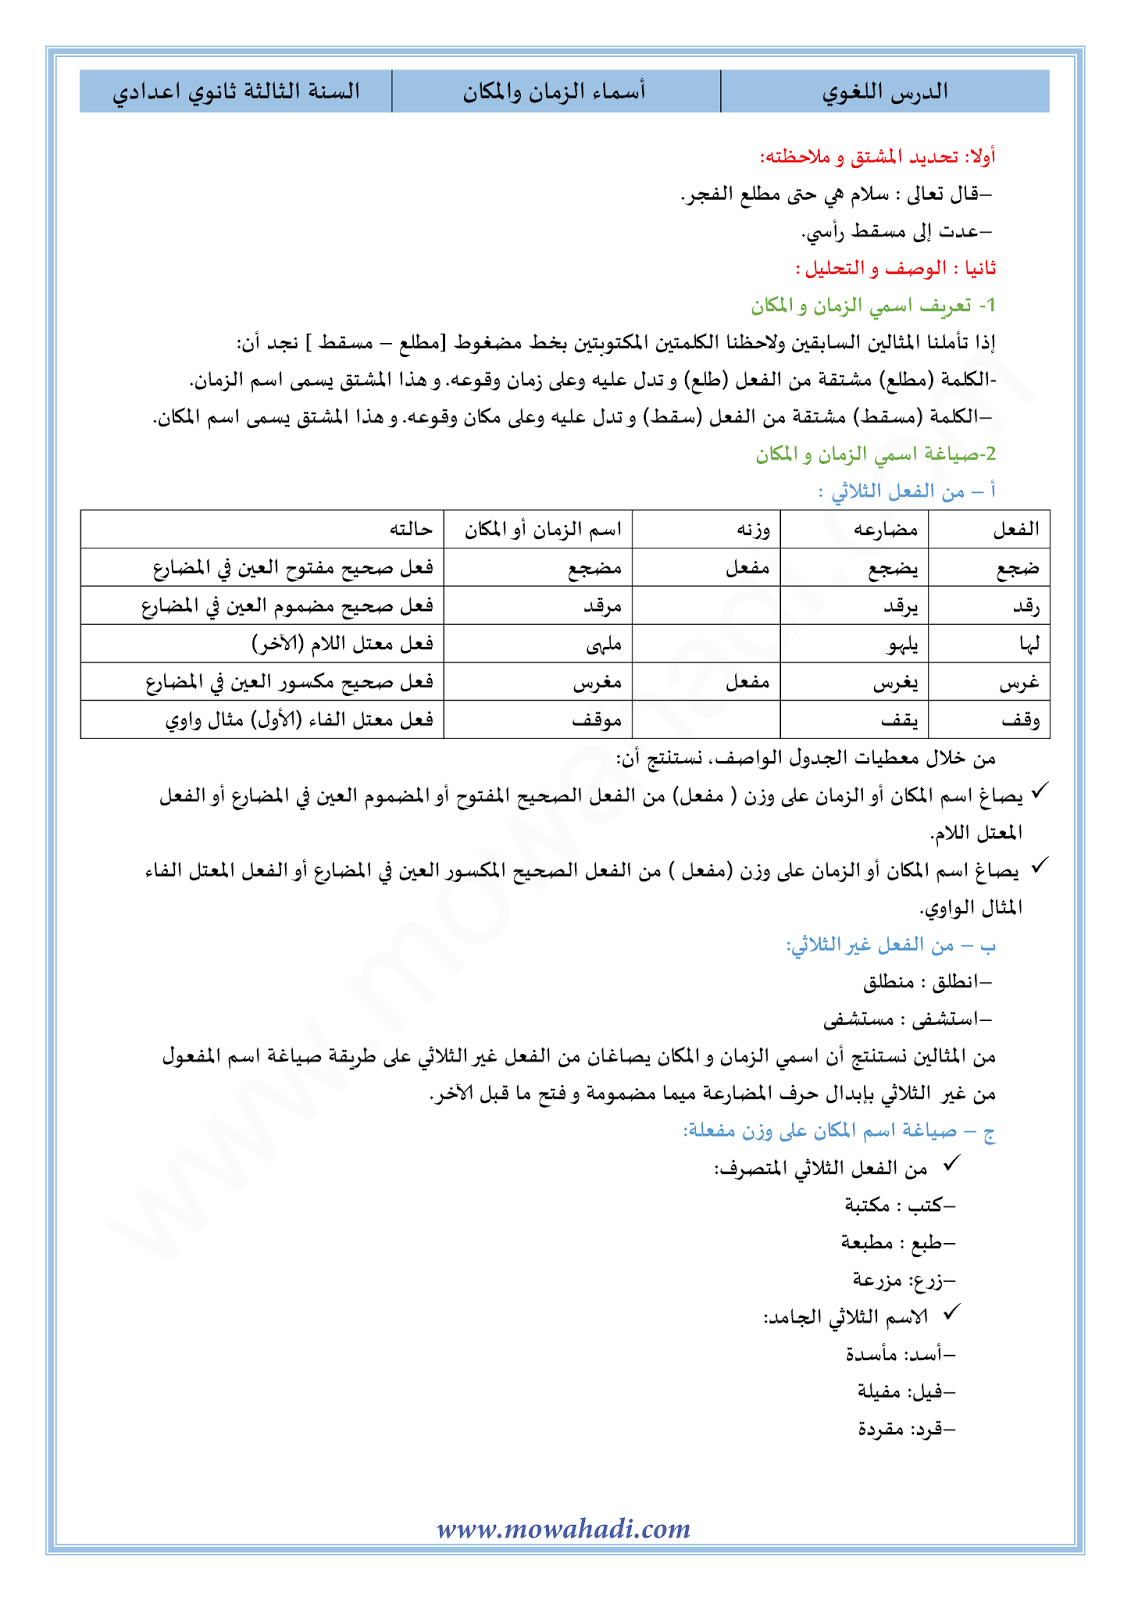 الدرس اللغوي اسم الزمان و المكان للسنة الثالثة اعدادي في مادة اللغة العربية 3-cours-dars-loghawi3_001